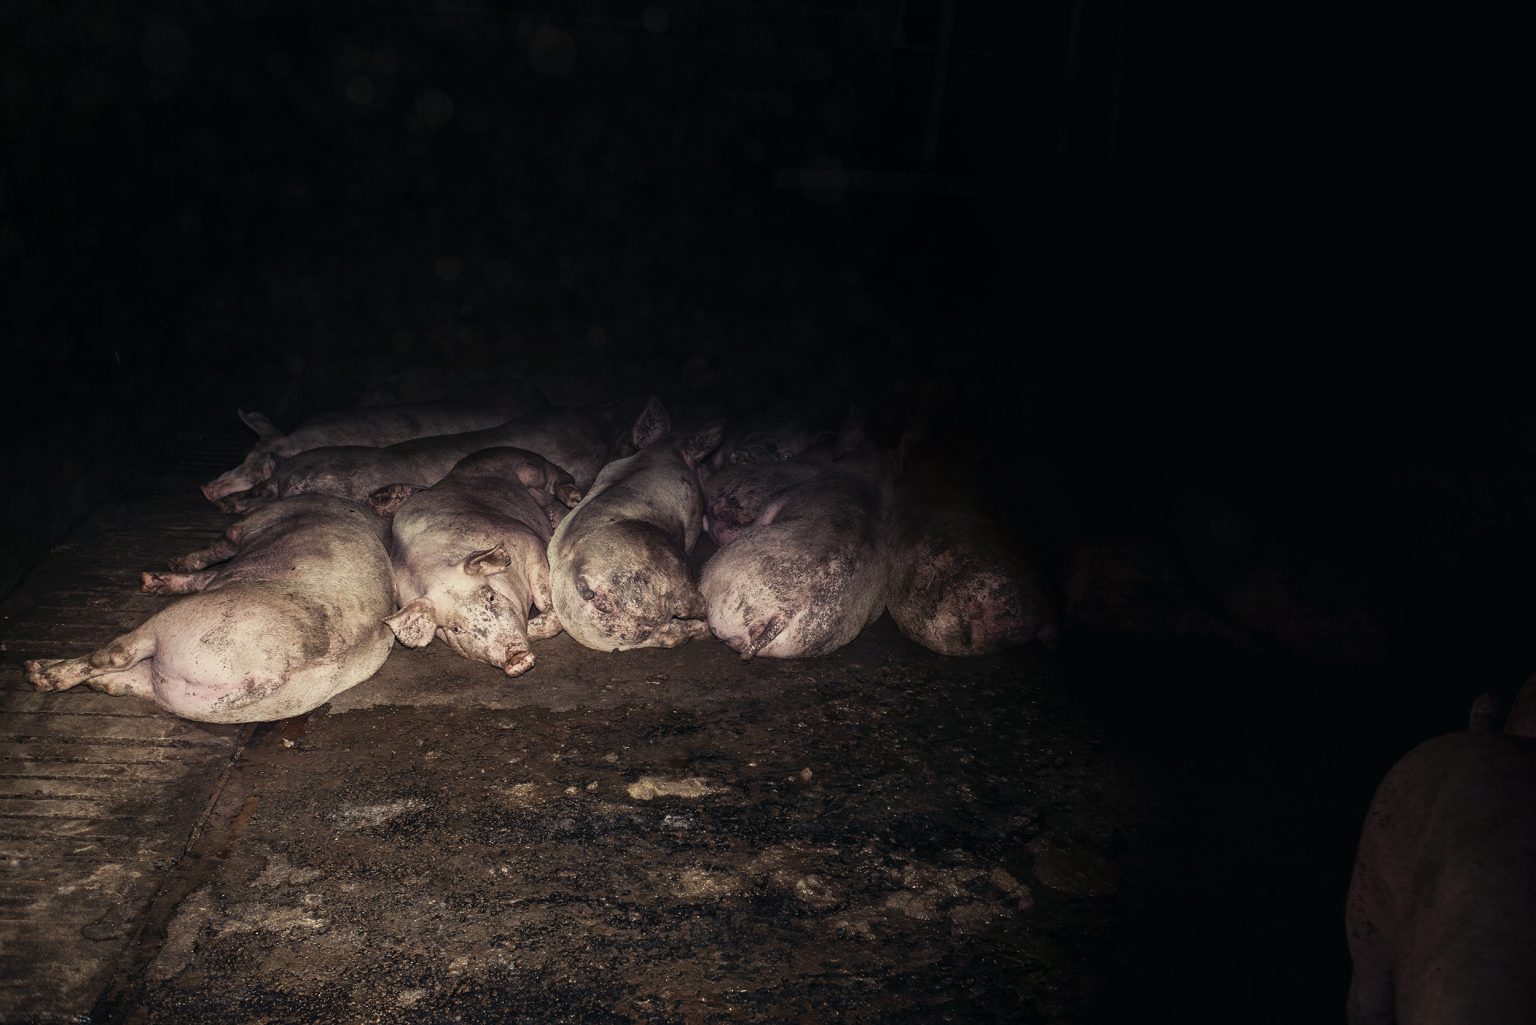 The interior of a fattening pig farm. Emilia Romagna. October 2017.

L'interno di un allevamento di suini da ingrasso. Emilia Romagna. Ottobre 2017.